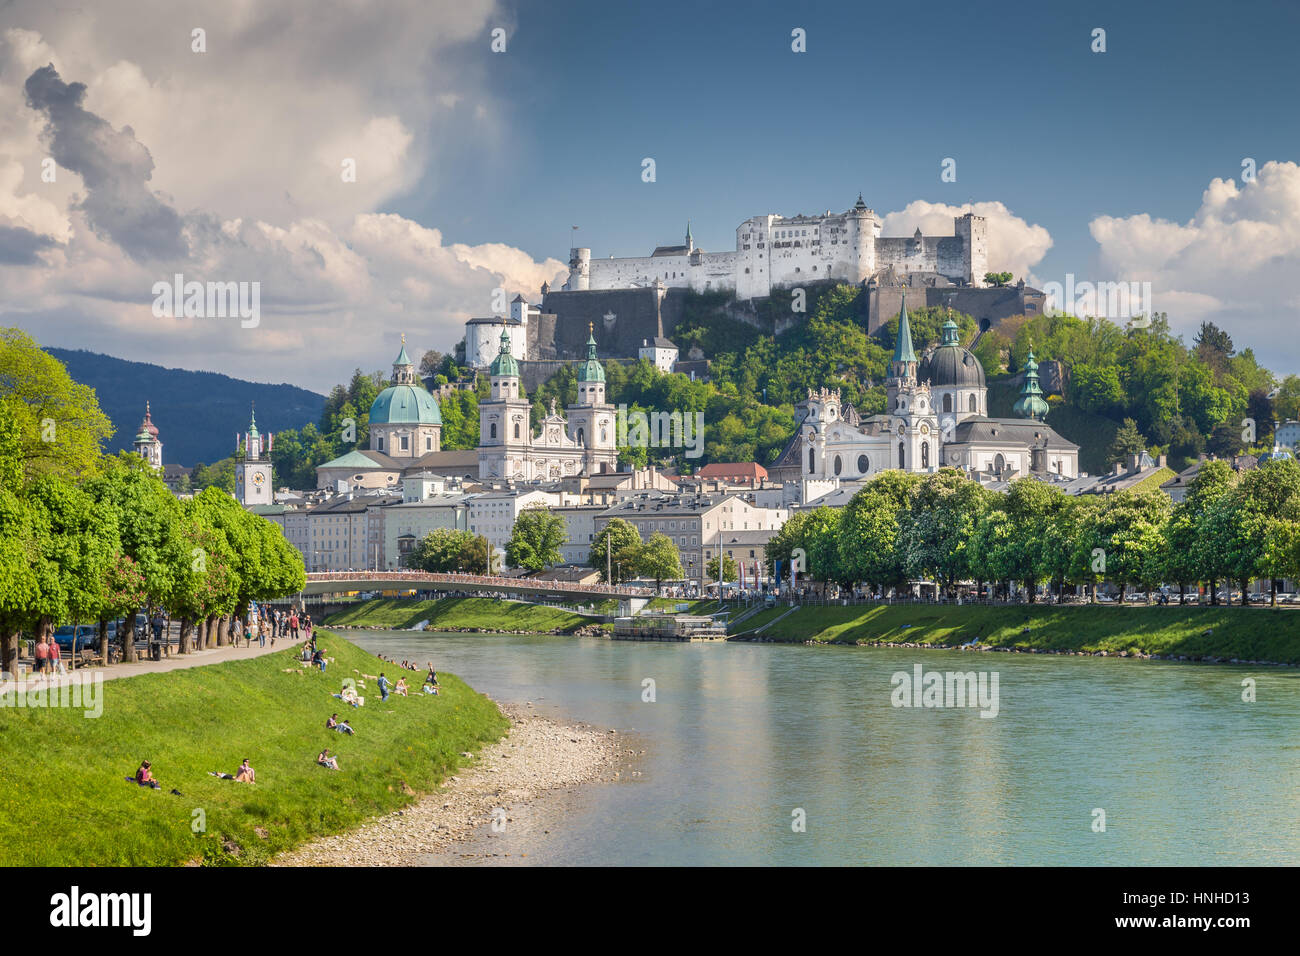 Visualizzazione classica del centro storico della città di Salisburgo con la famosa Festung Hohensalzburg riflettente nel bellissimo fiume Salzach in estate, Salisburgo, Austria Foto Stock